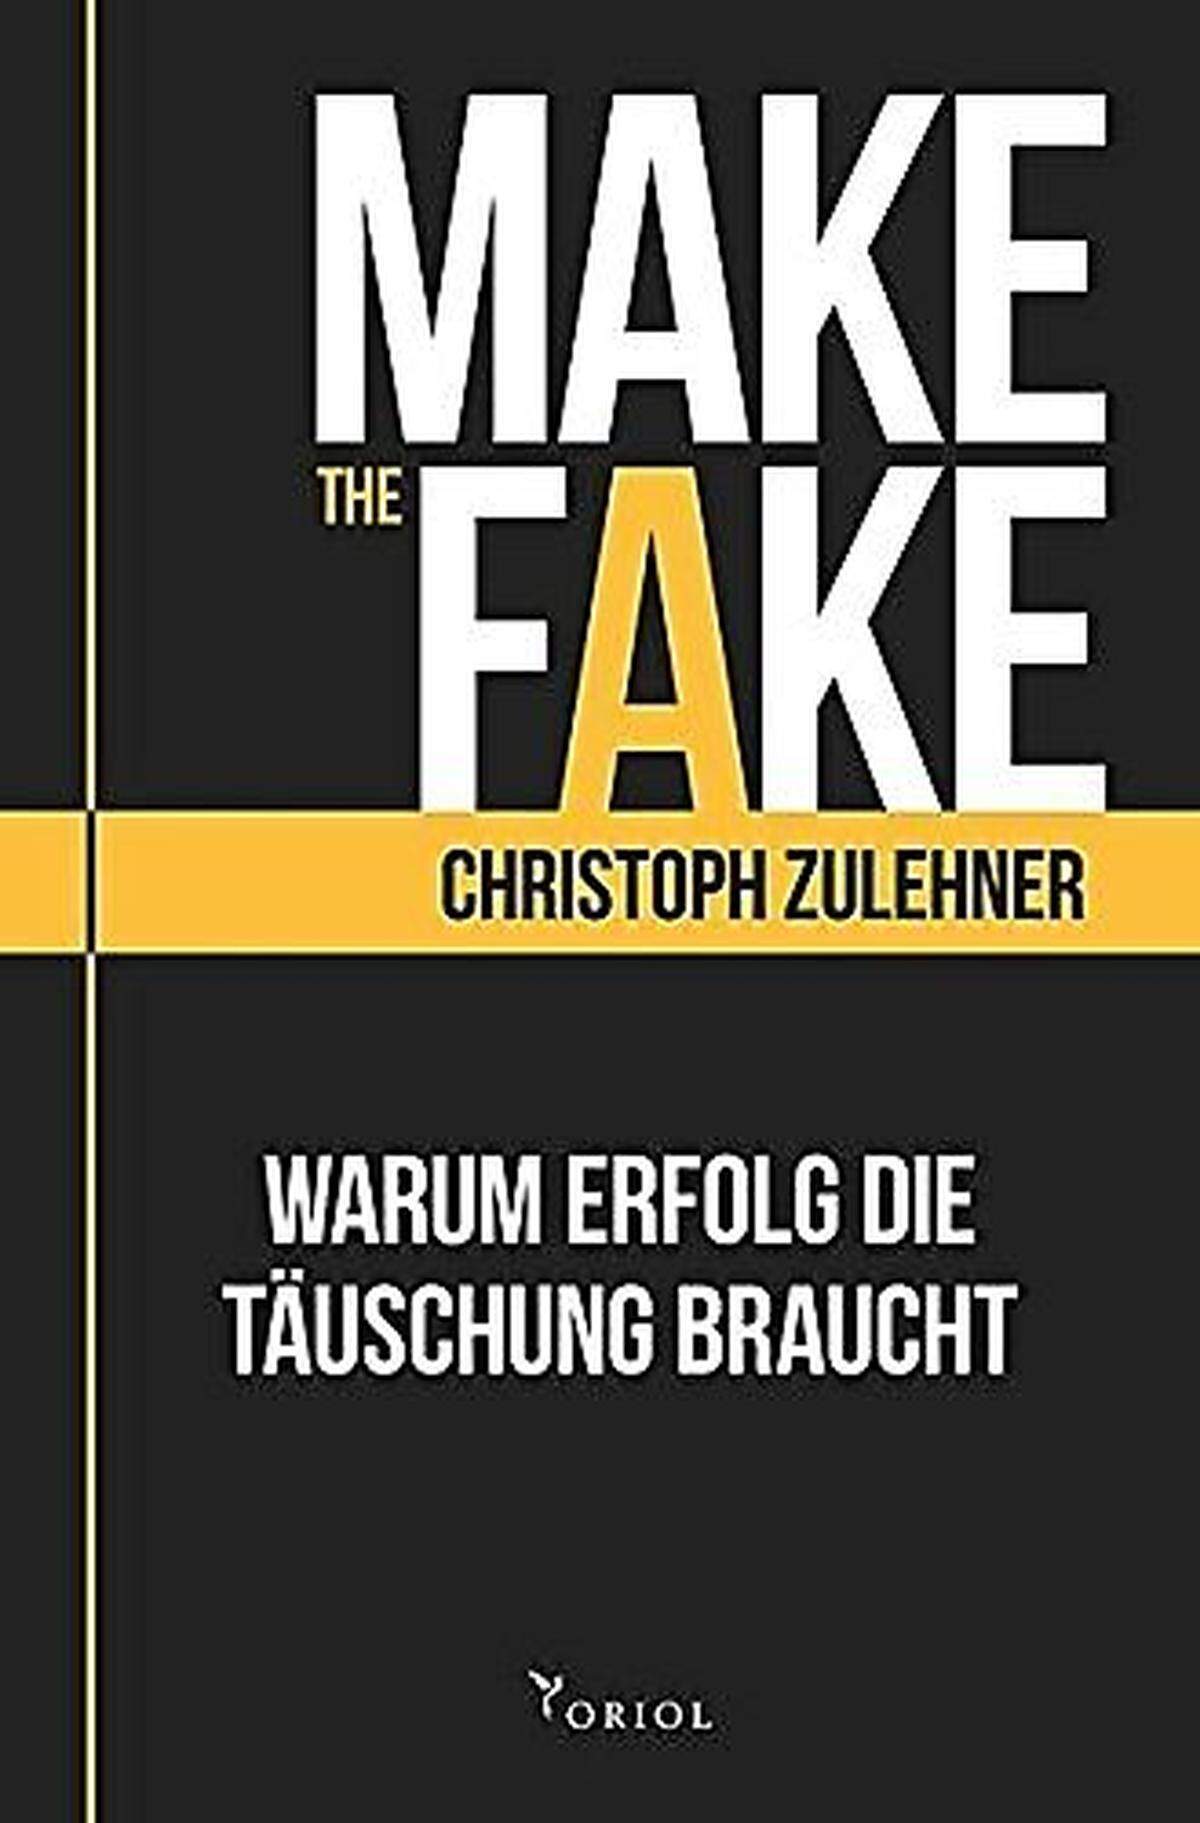 Christoph Zulehner, selbst überzeugter Faker, hat kürzlich das Buch "Make the Fake - Warum Erfolg die Täuschung braucht" herausgebracht. "Geben Sie alles, um zu werden was Sie vorgeben zu sein", rät der Strategieexperte.